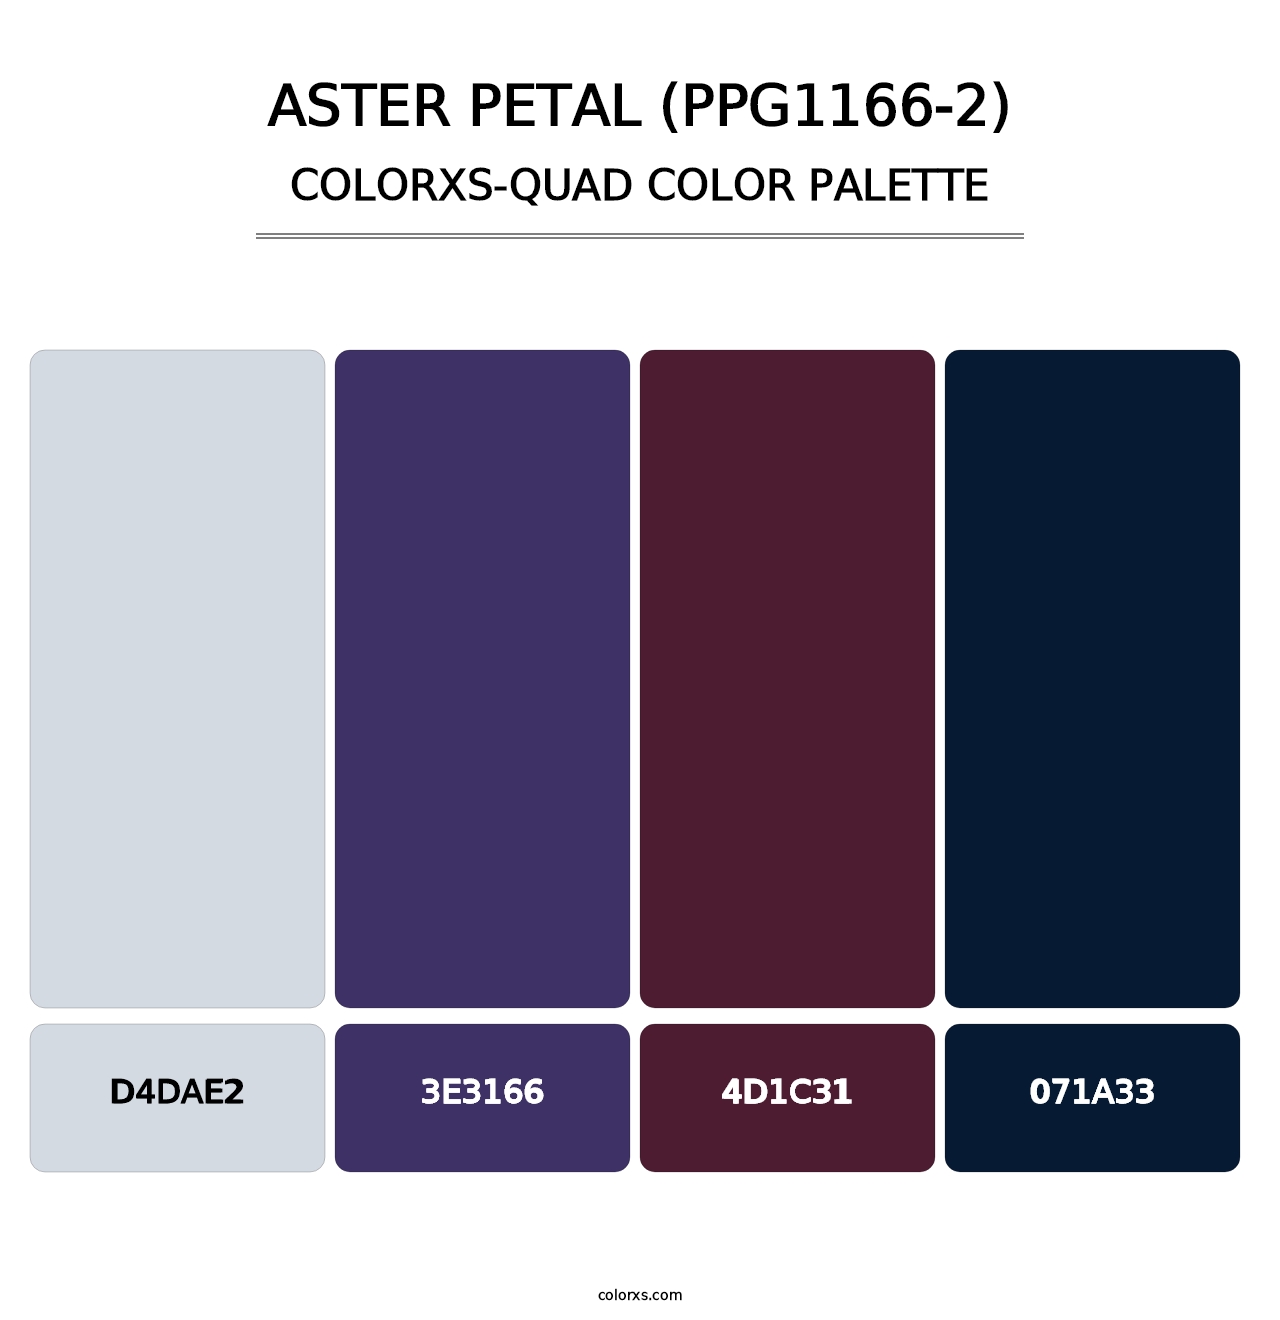 Aster Petal (PPG1166-2) - Colorxs Quad Palette